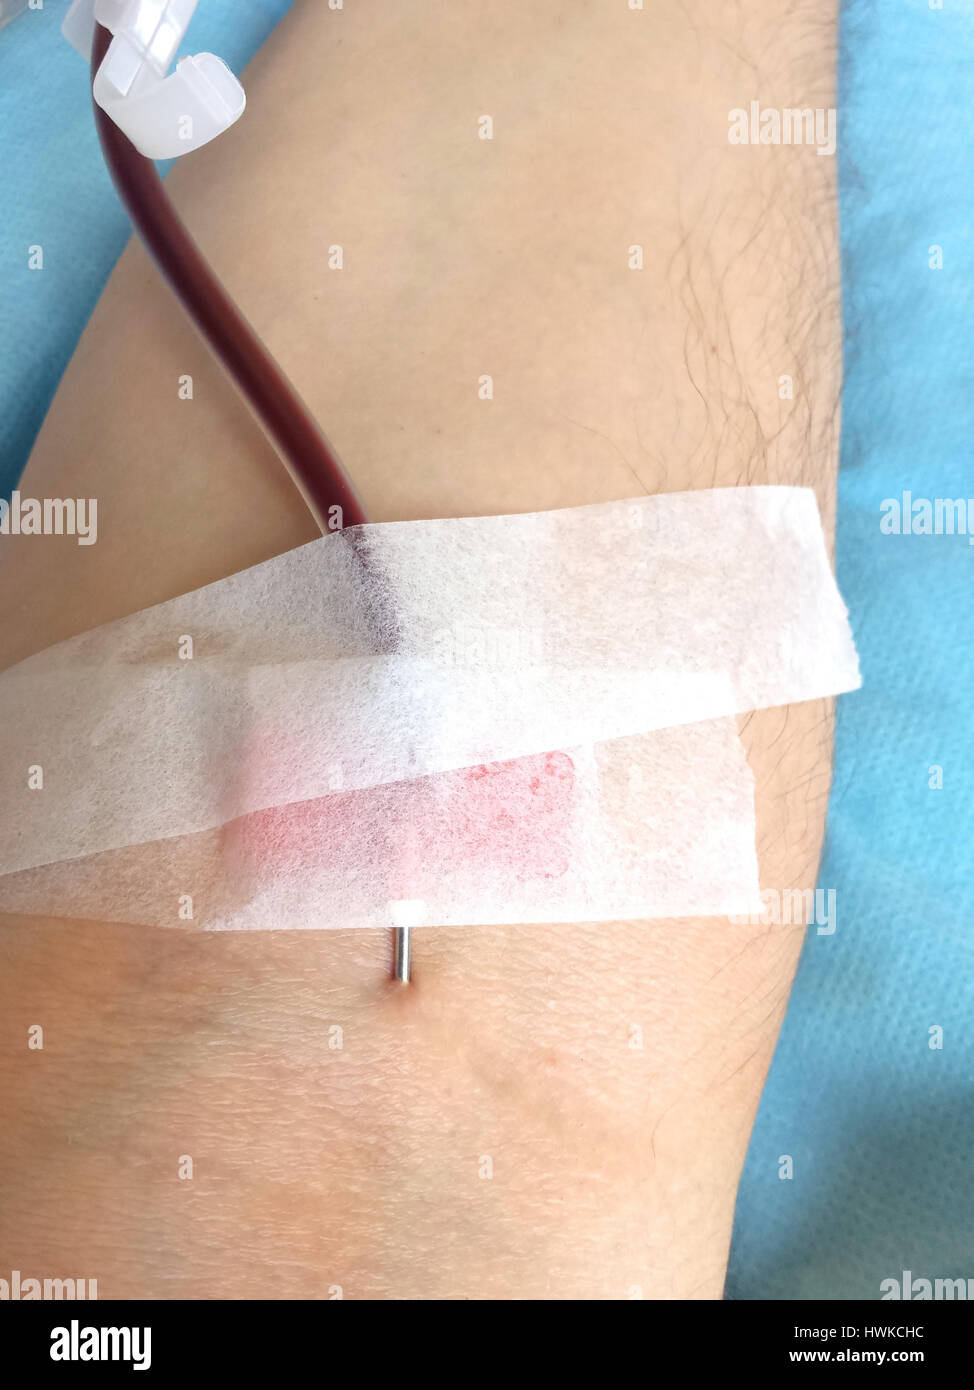 Braccio del paziente in un ospedale durante la trasfusione di sangue con l'ago all'interno del braccio Foto Stock